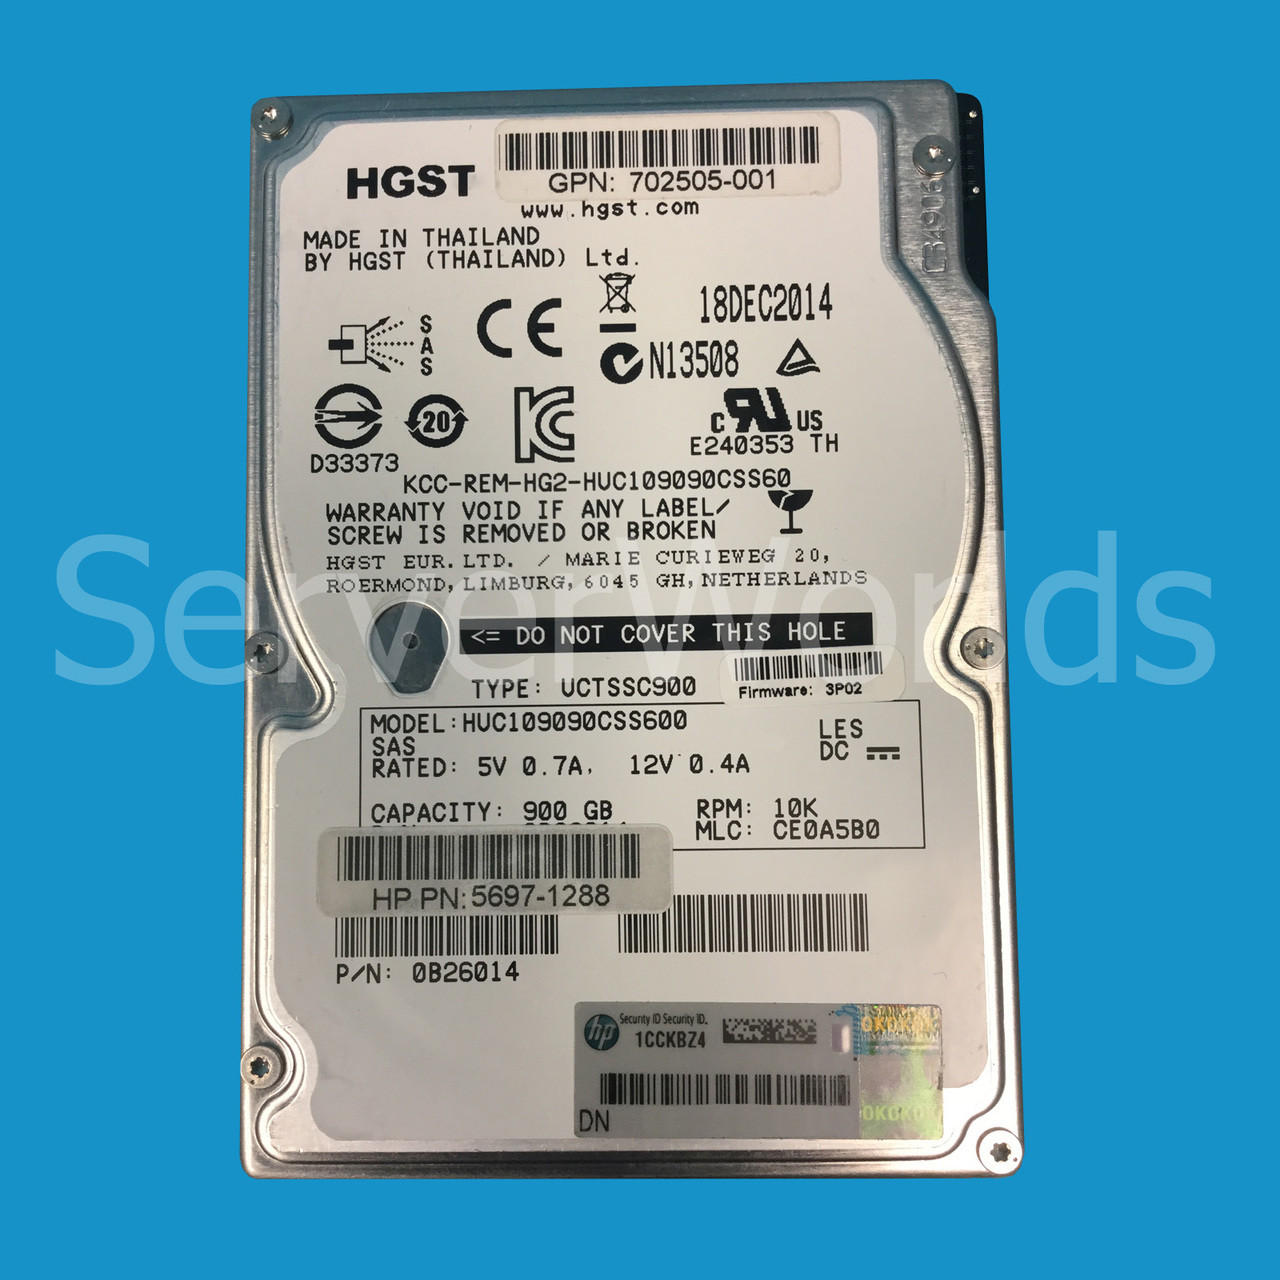 HP 5697-1288 | 900GB SAS 10K 2.5